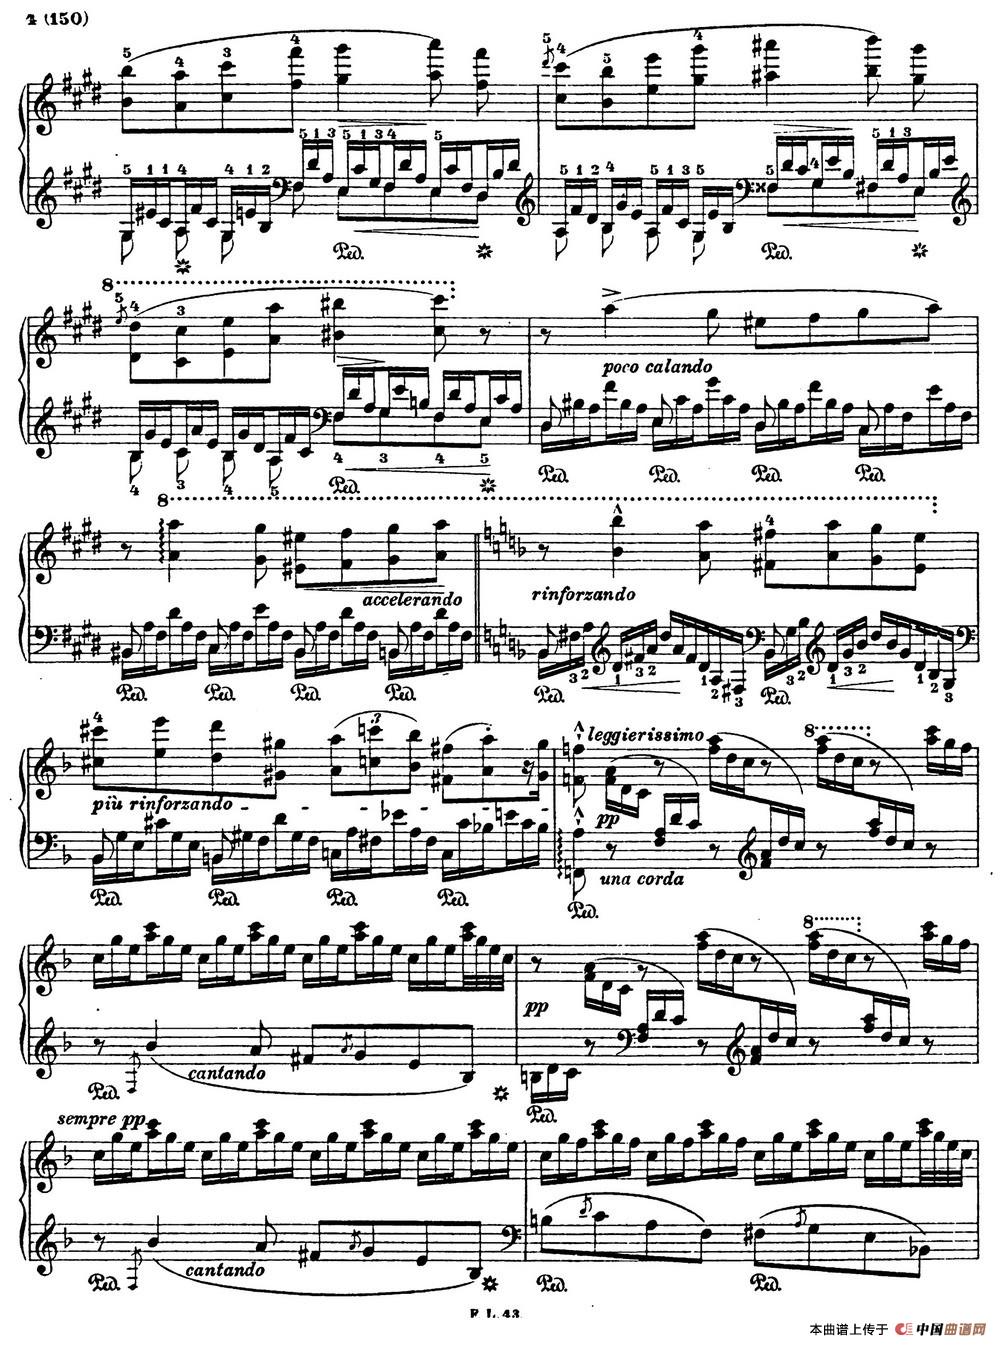 李斯特音乐会练习曲 S145（2 S145 侏儒舞 Gnomenreigen）(1)_Etudes de Concert s145 Liszt_页面_11~1.jpg